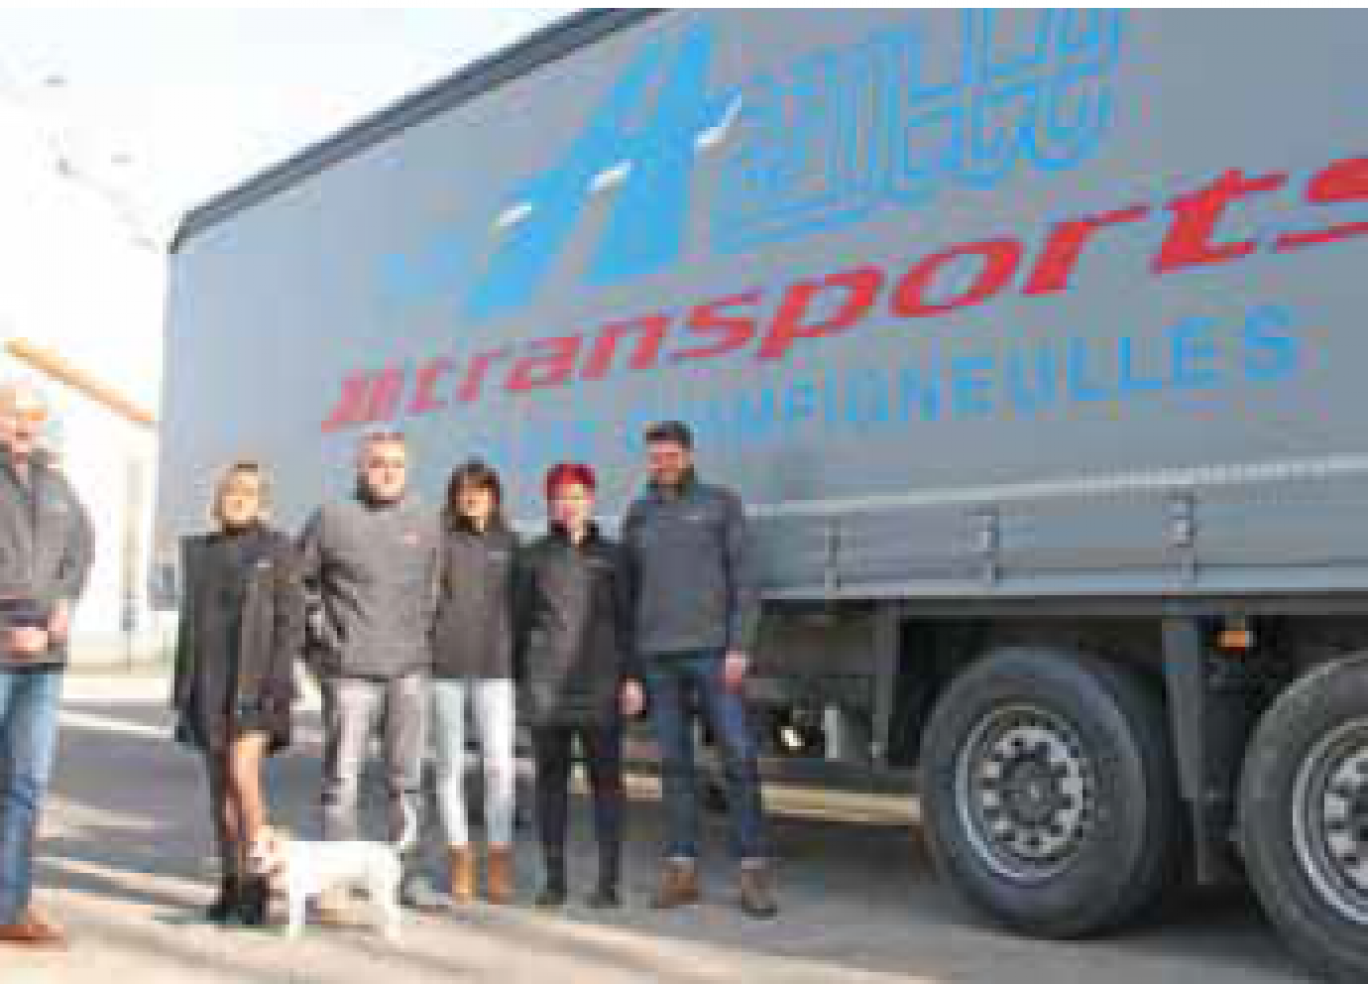 En quinze ans d’existence, l’entreprise Olivier Hazotte Transport a su s’adapter à l’évolution du métier de transporteur en diversifiant son activité grâce, notamment, à son adhésion au groupement Flo.